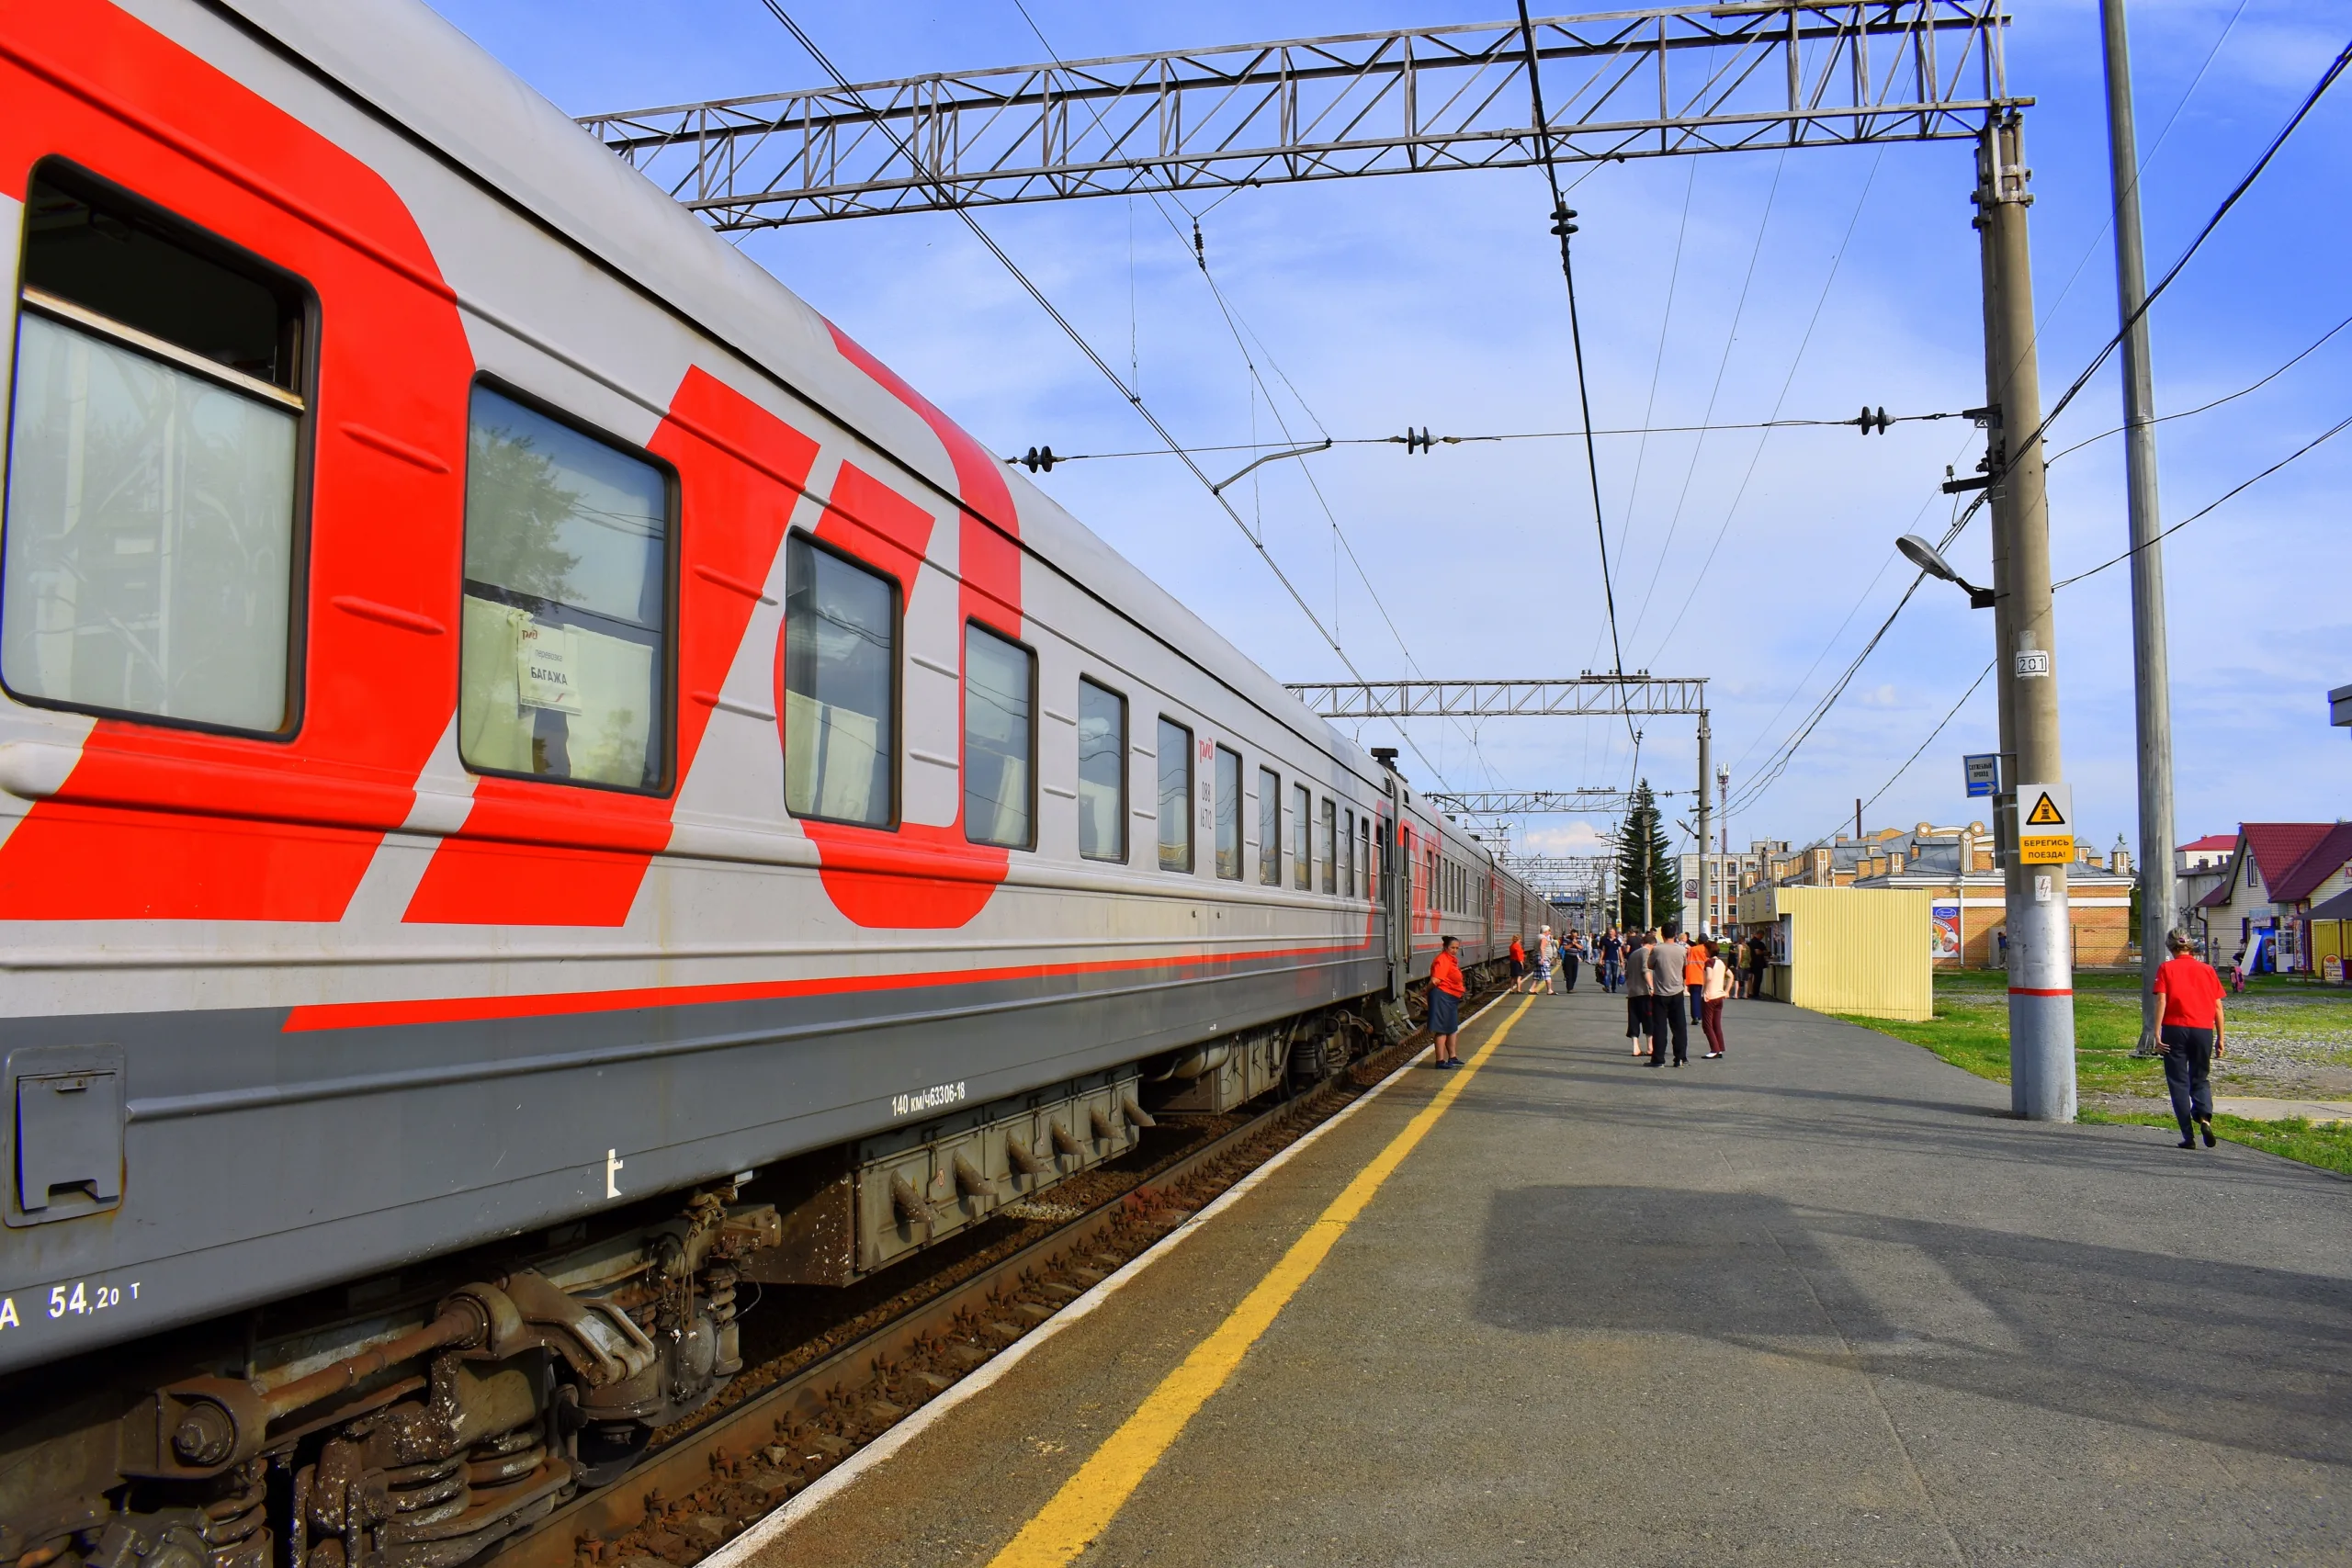 Quanto custa viajar no trem de luxo transiberiano?